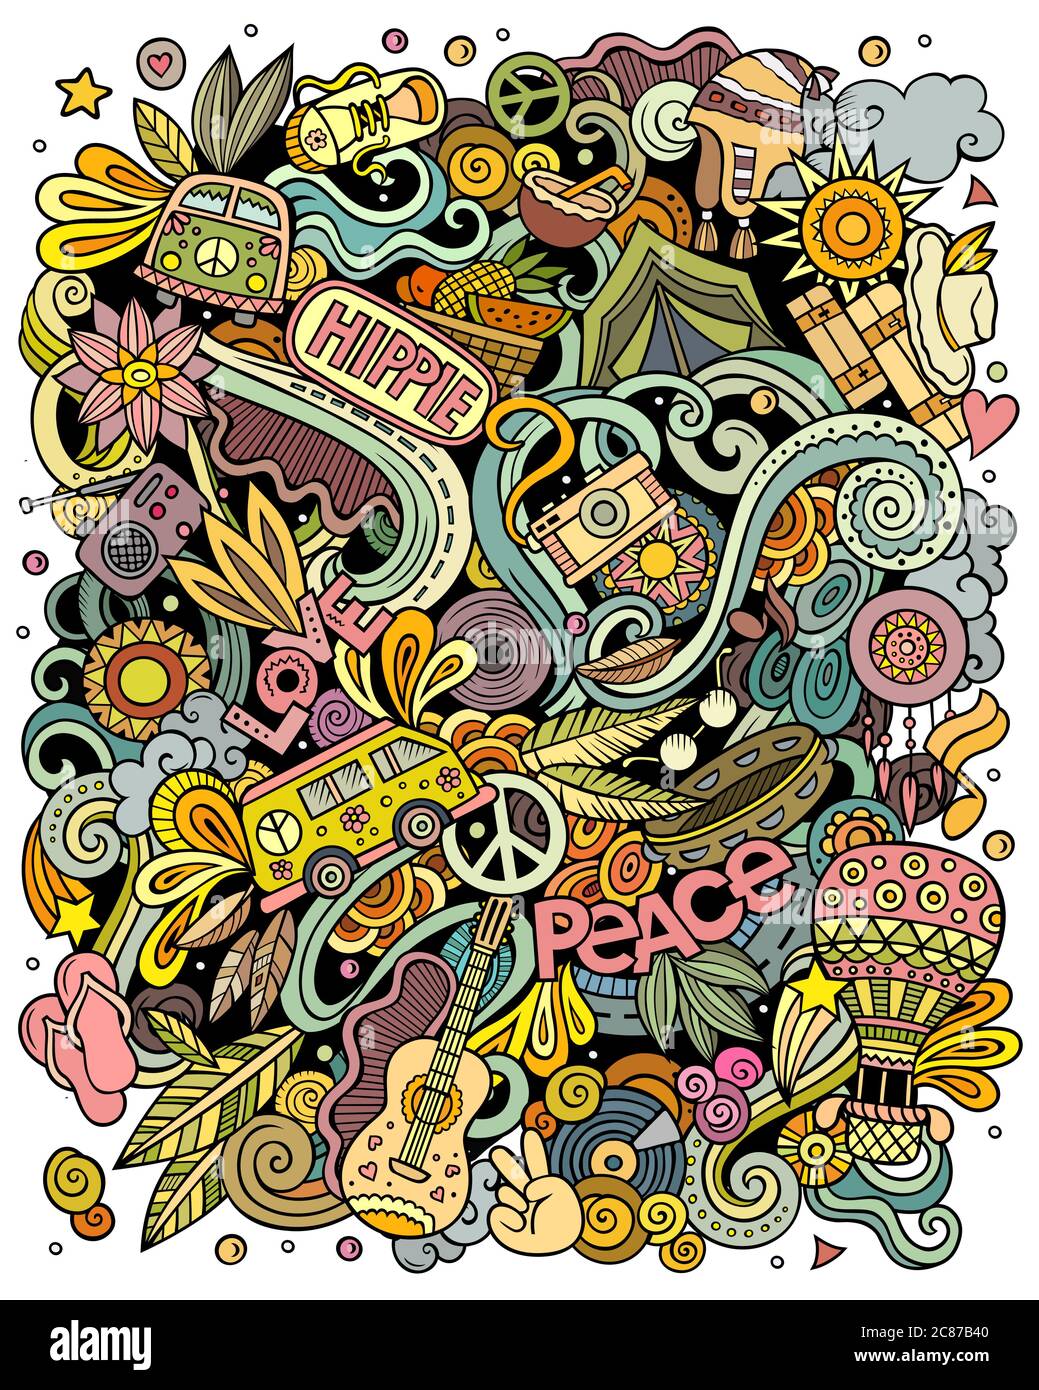 Illustrazione di doodles vettoriali disegnati a mano di hippie. Poster Hippy. Illustrazione Vettoriale